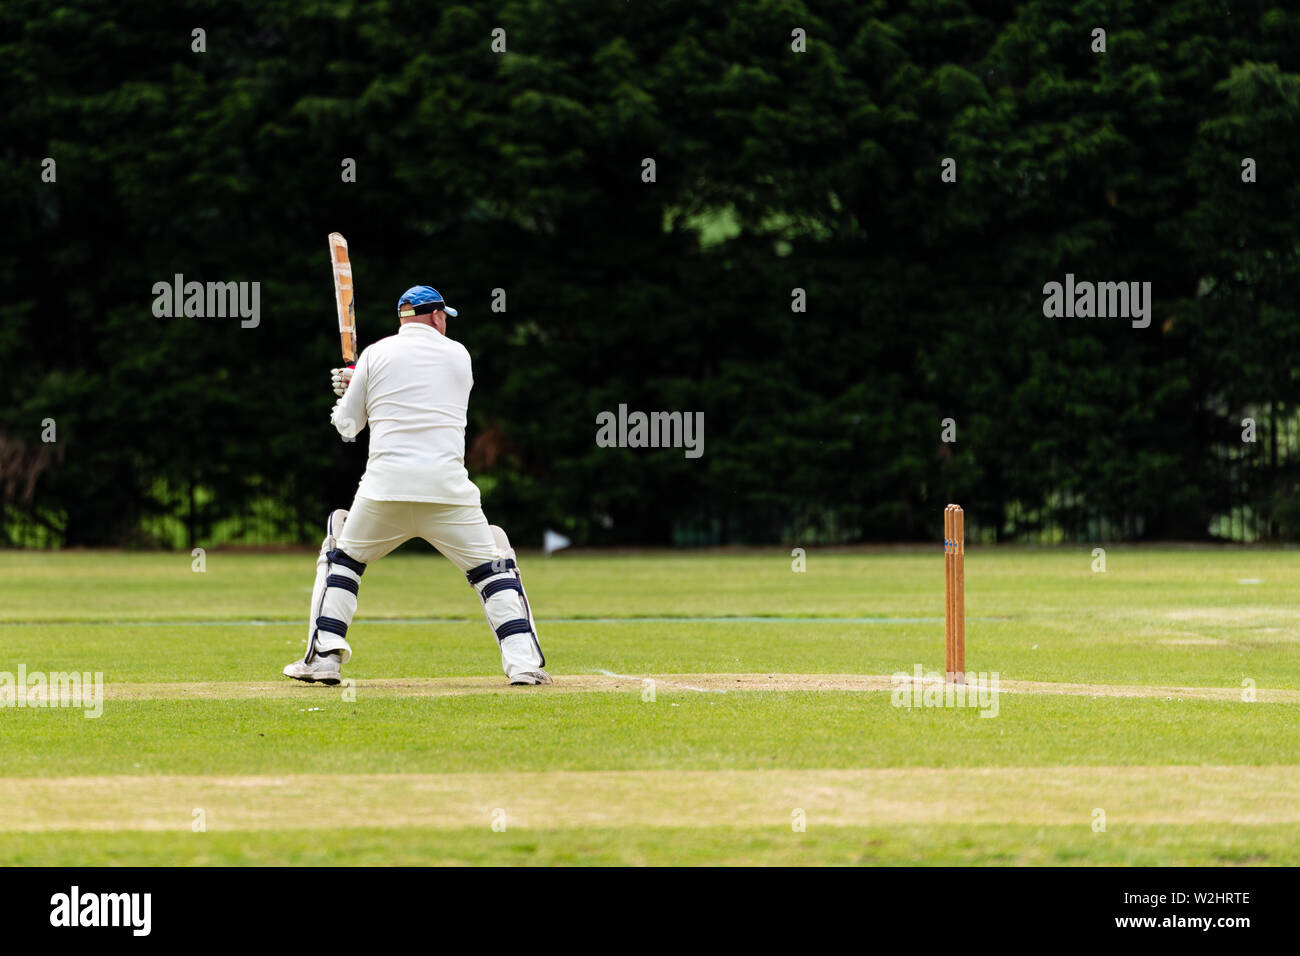 Dietro la vista laterale del giocatore di cricket batting durante il gioco sul campo in un parco locale Foto Stock